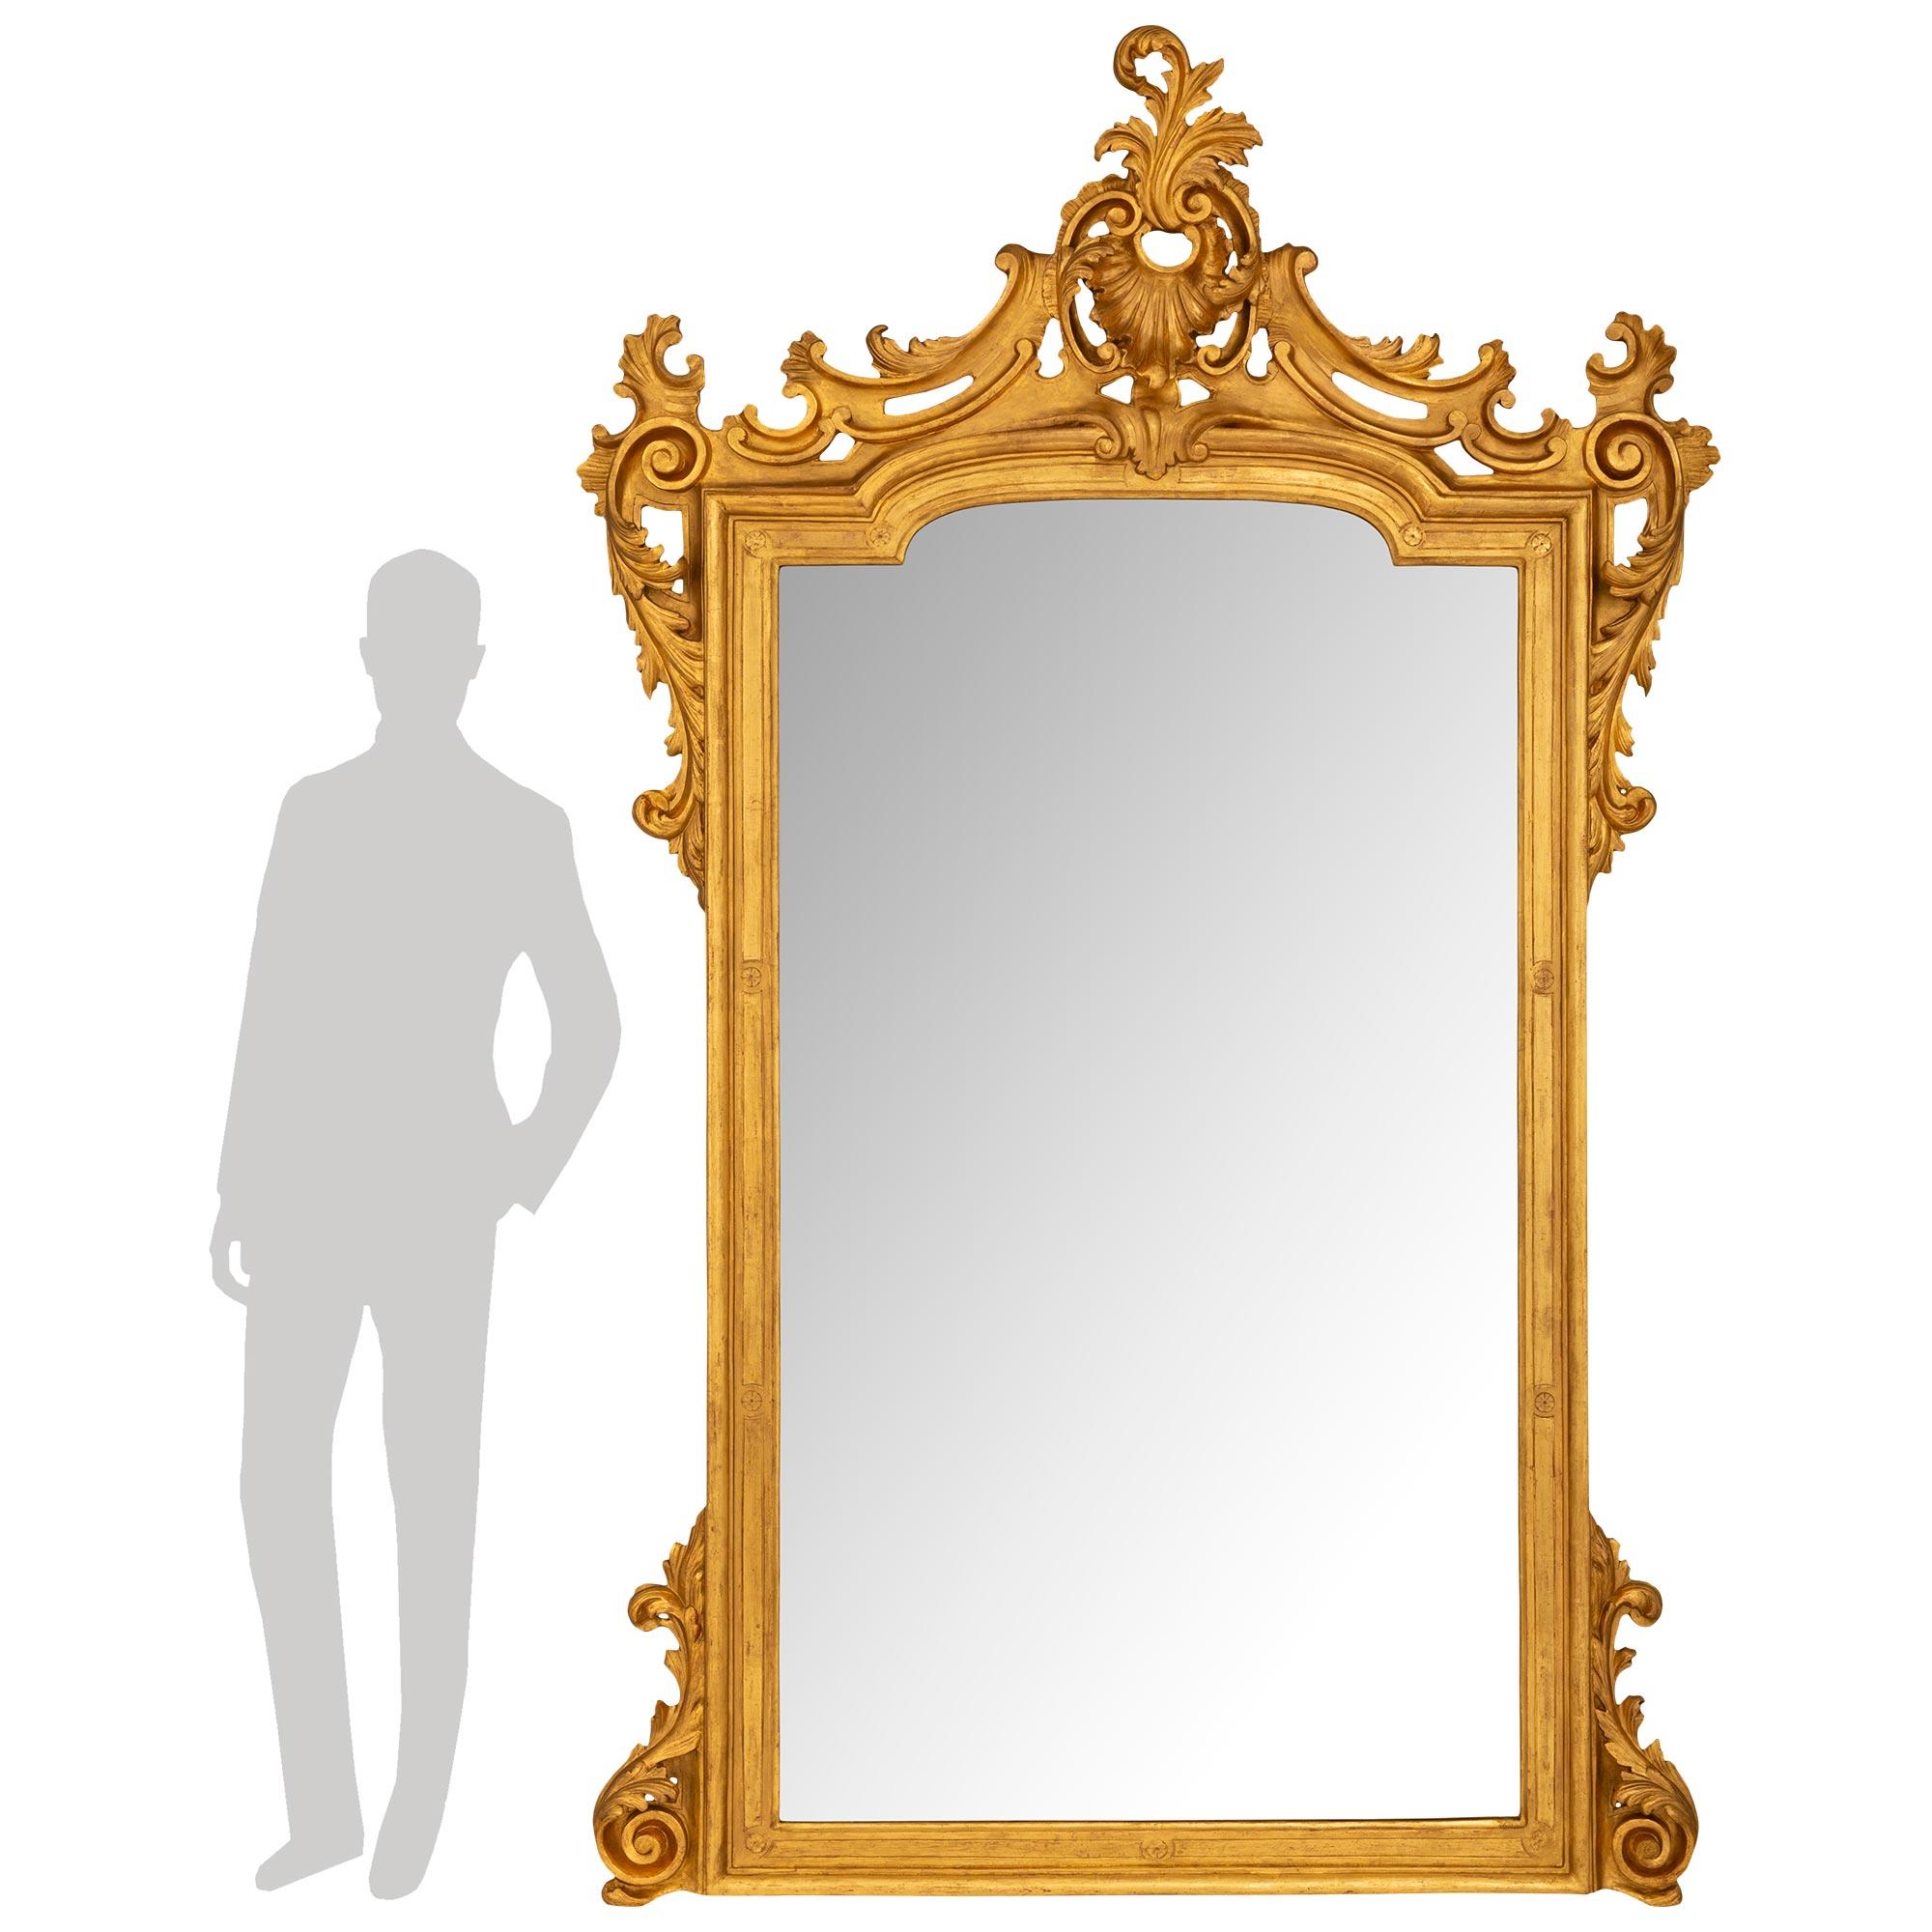 Magnifique paire de miroirs en bois doré de style Louis XV italien du XIXe siècle, finement détaillés. Chaque miroir repose sur des pieds à volutes flanquant le cadre finement détaillé aux bords marbrés et aux réserves de rosettes sculptées menant à